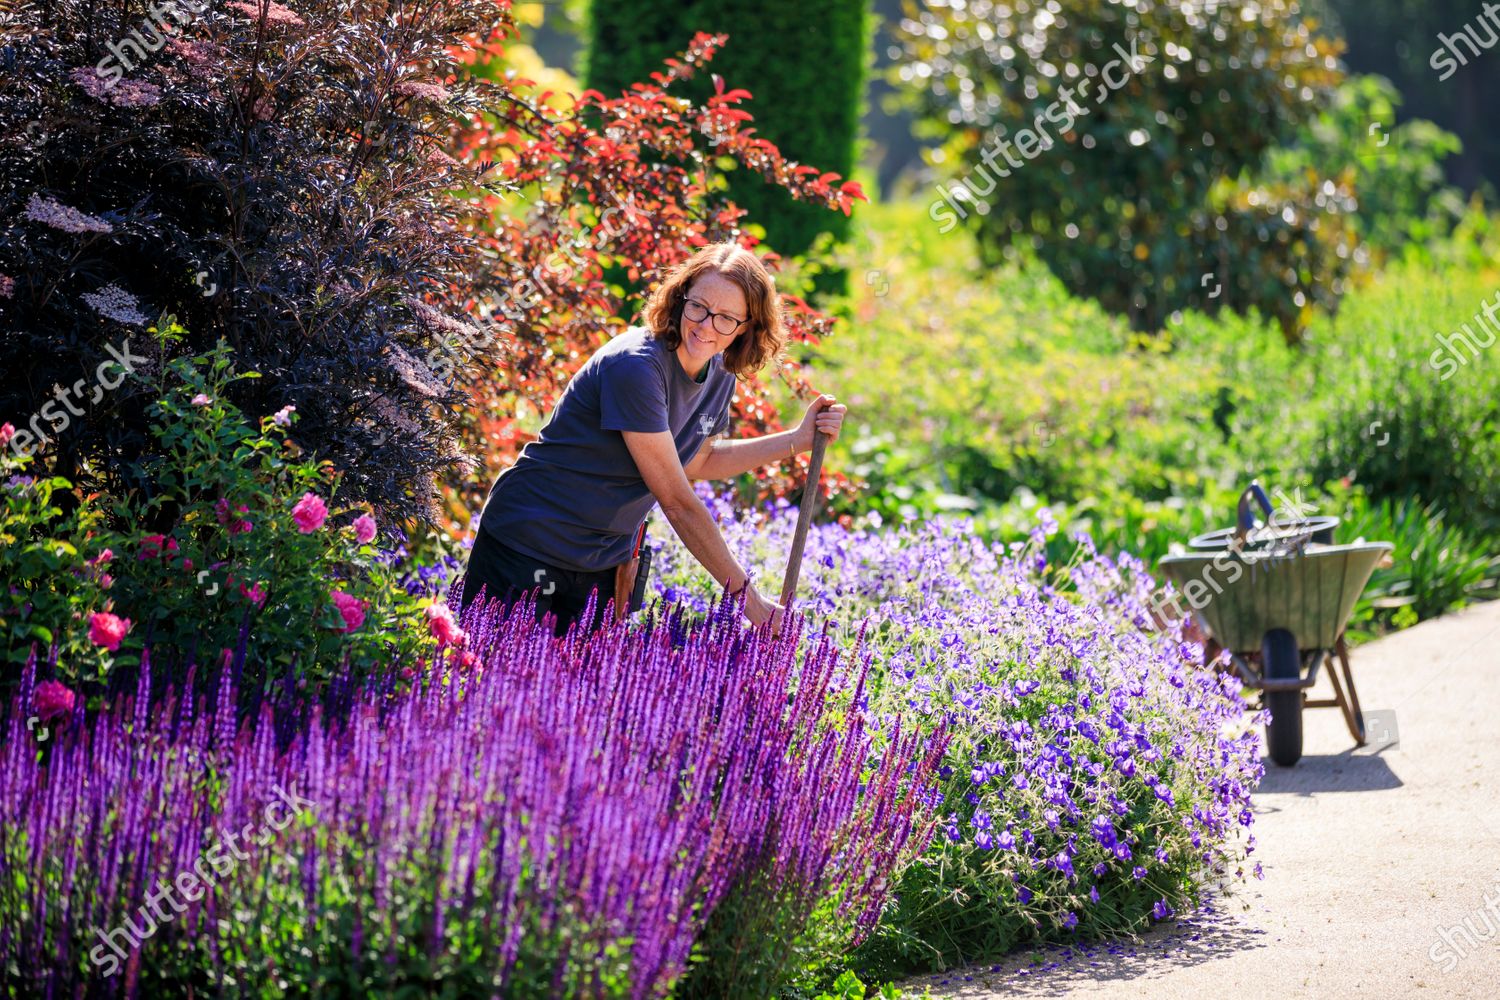 Emma Allen Garden Manager Pictured Rhs Garden Editorial Stock Photo Stock Image Shutterstock